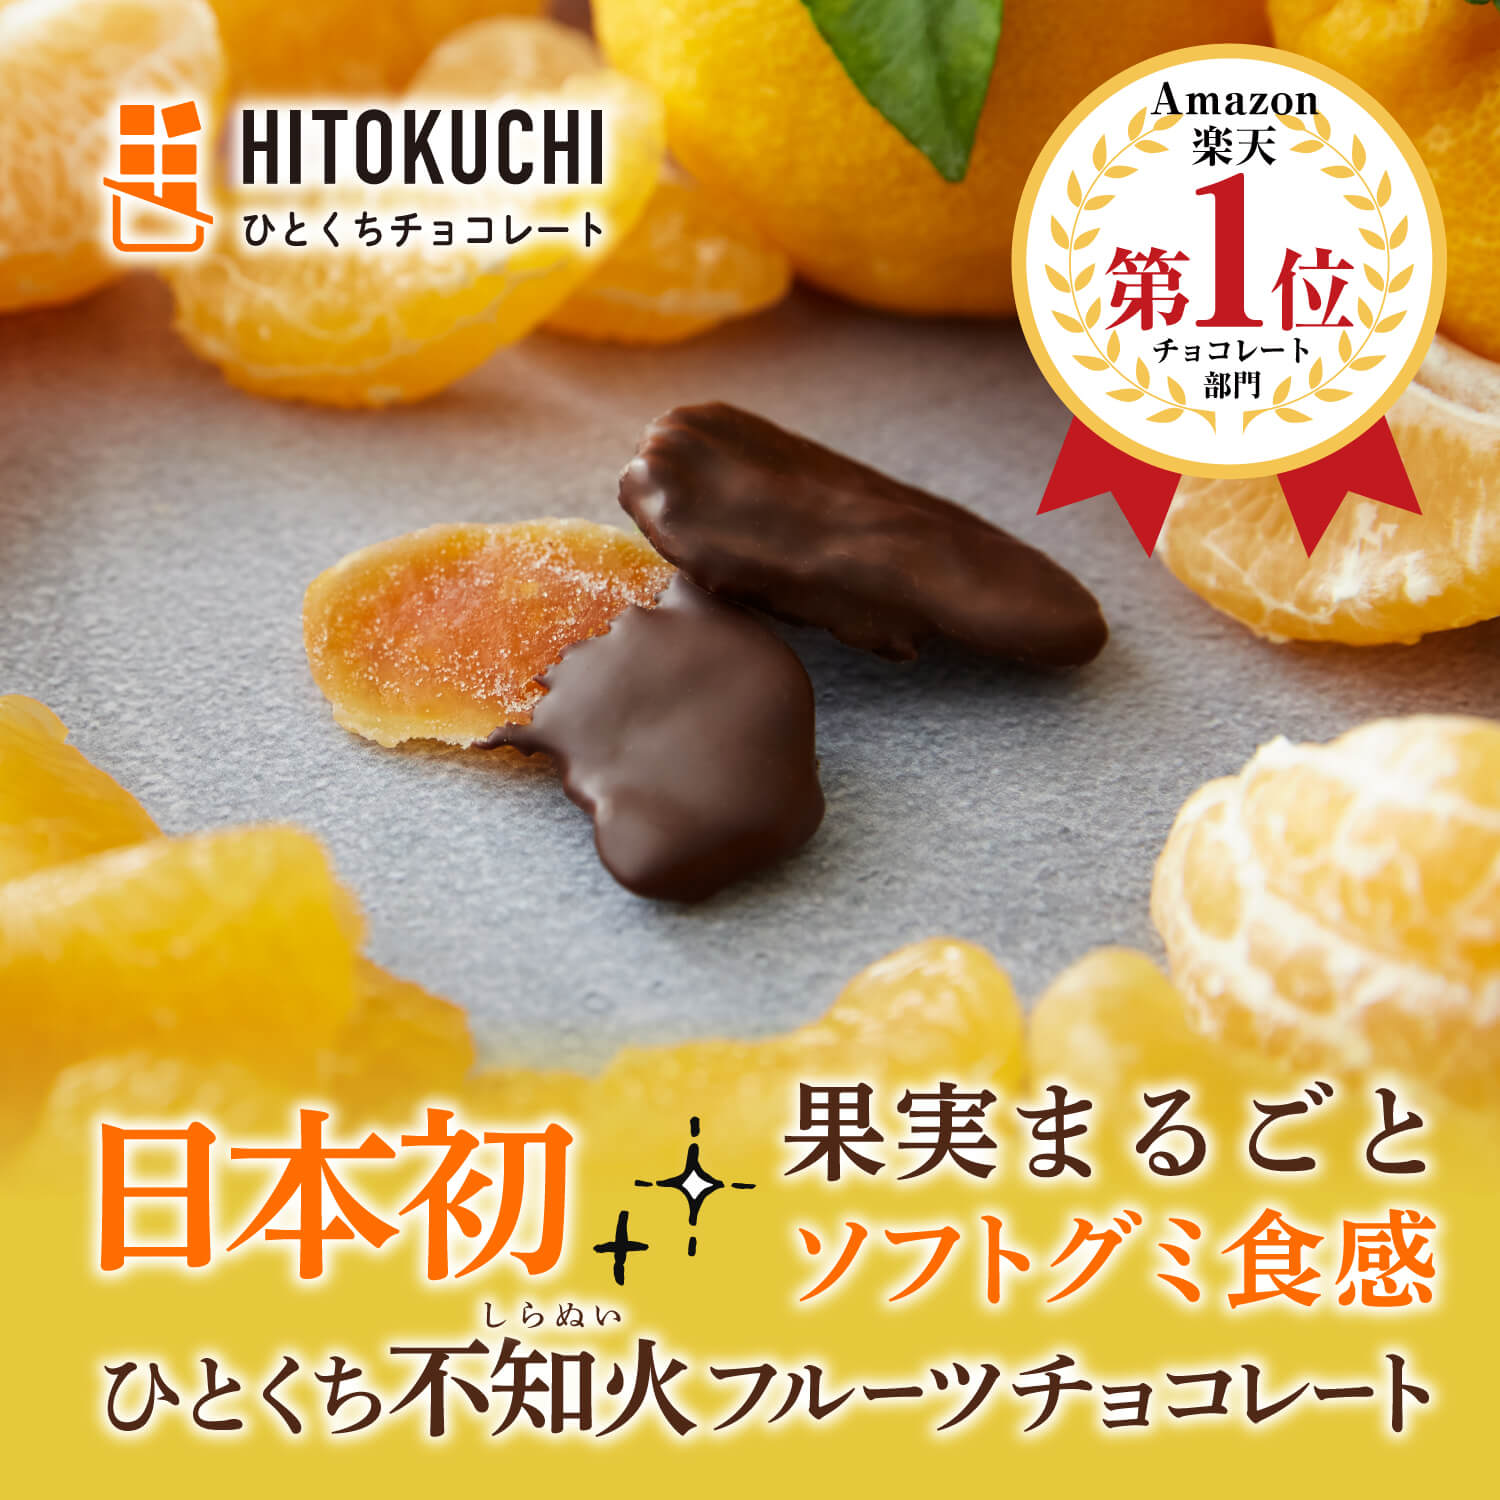 【3袋セット】フルーツチョコ3種セット